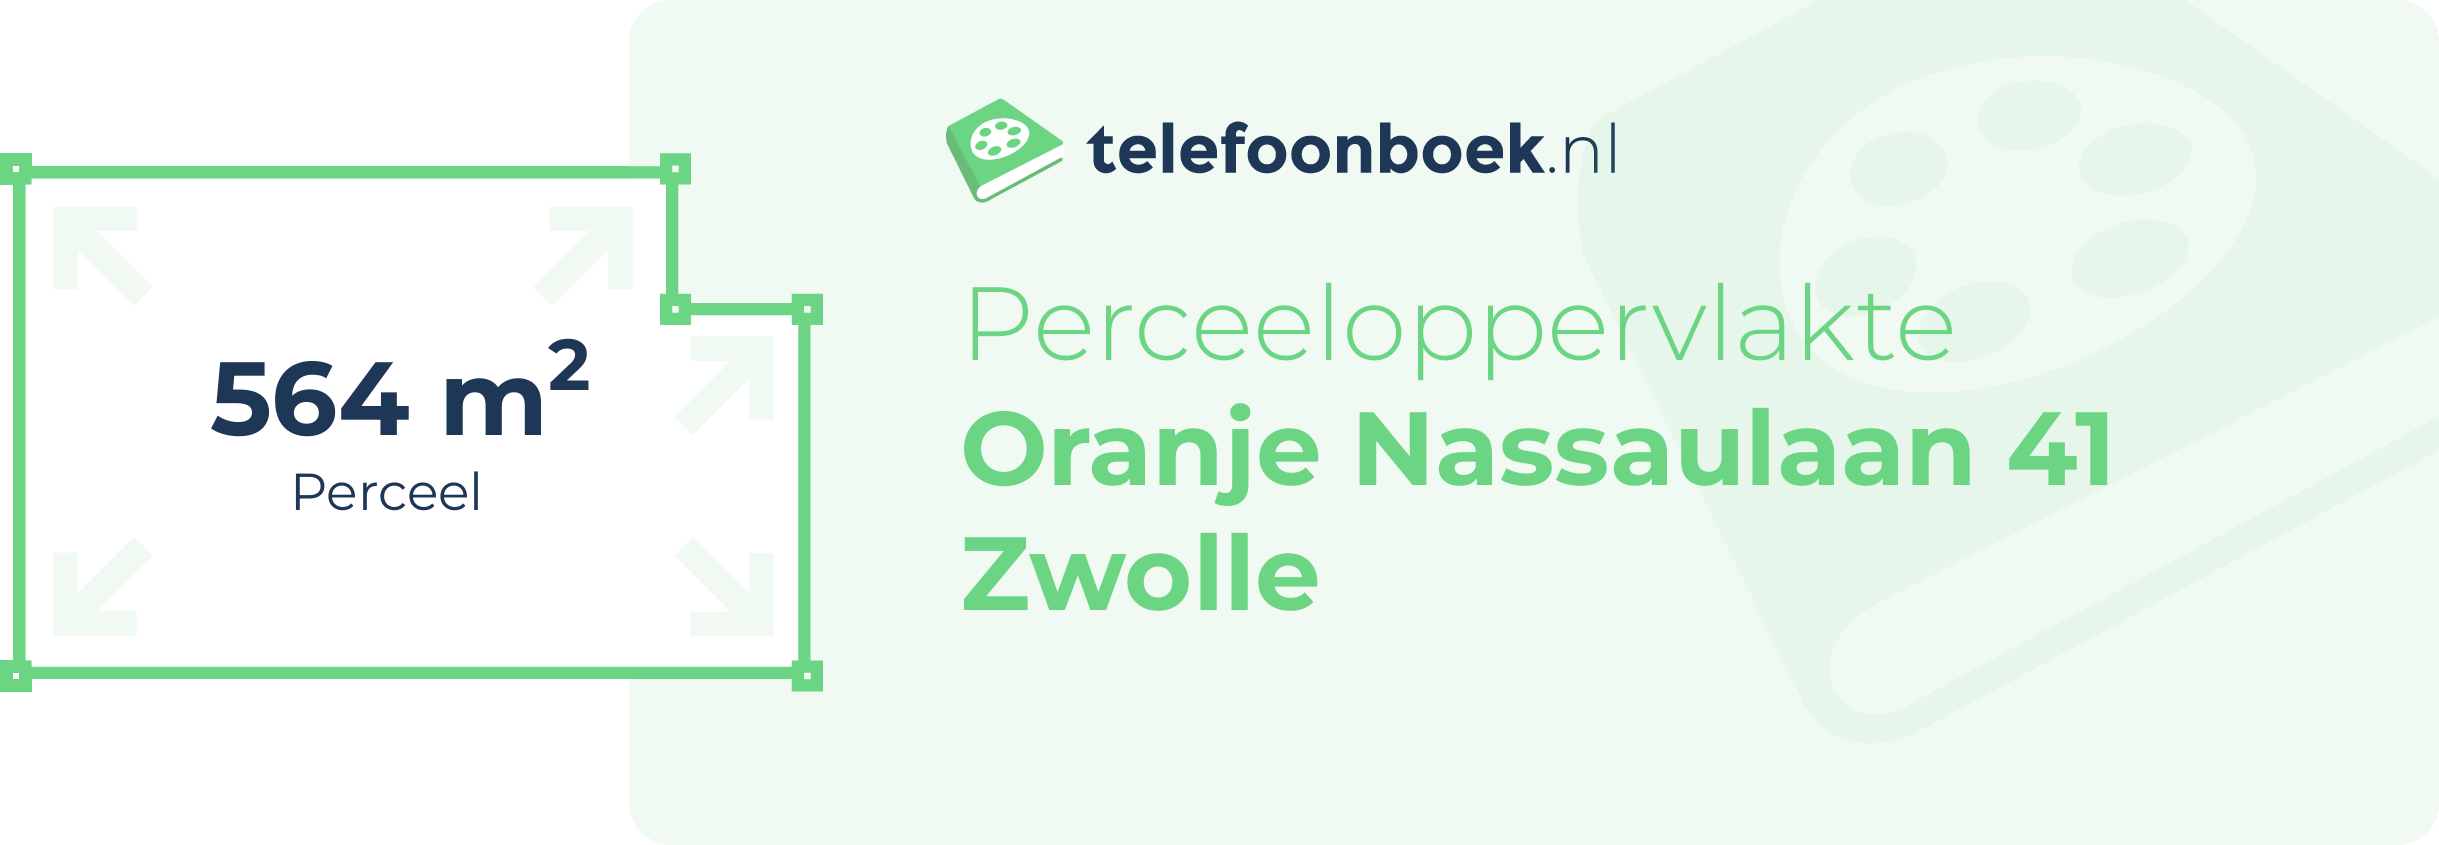 Perceeloppervlakte Oranje Nassaulaan 41 Zwolle